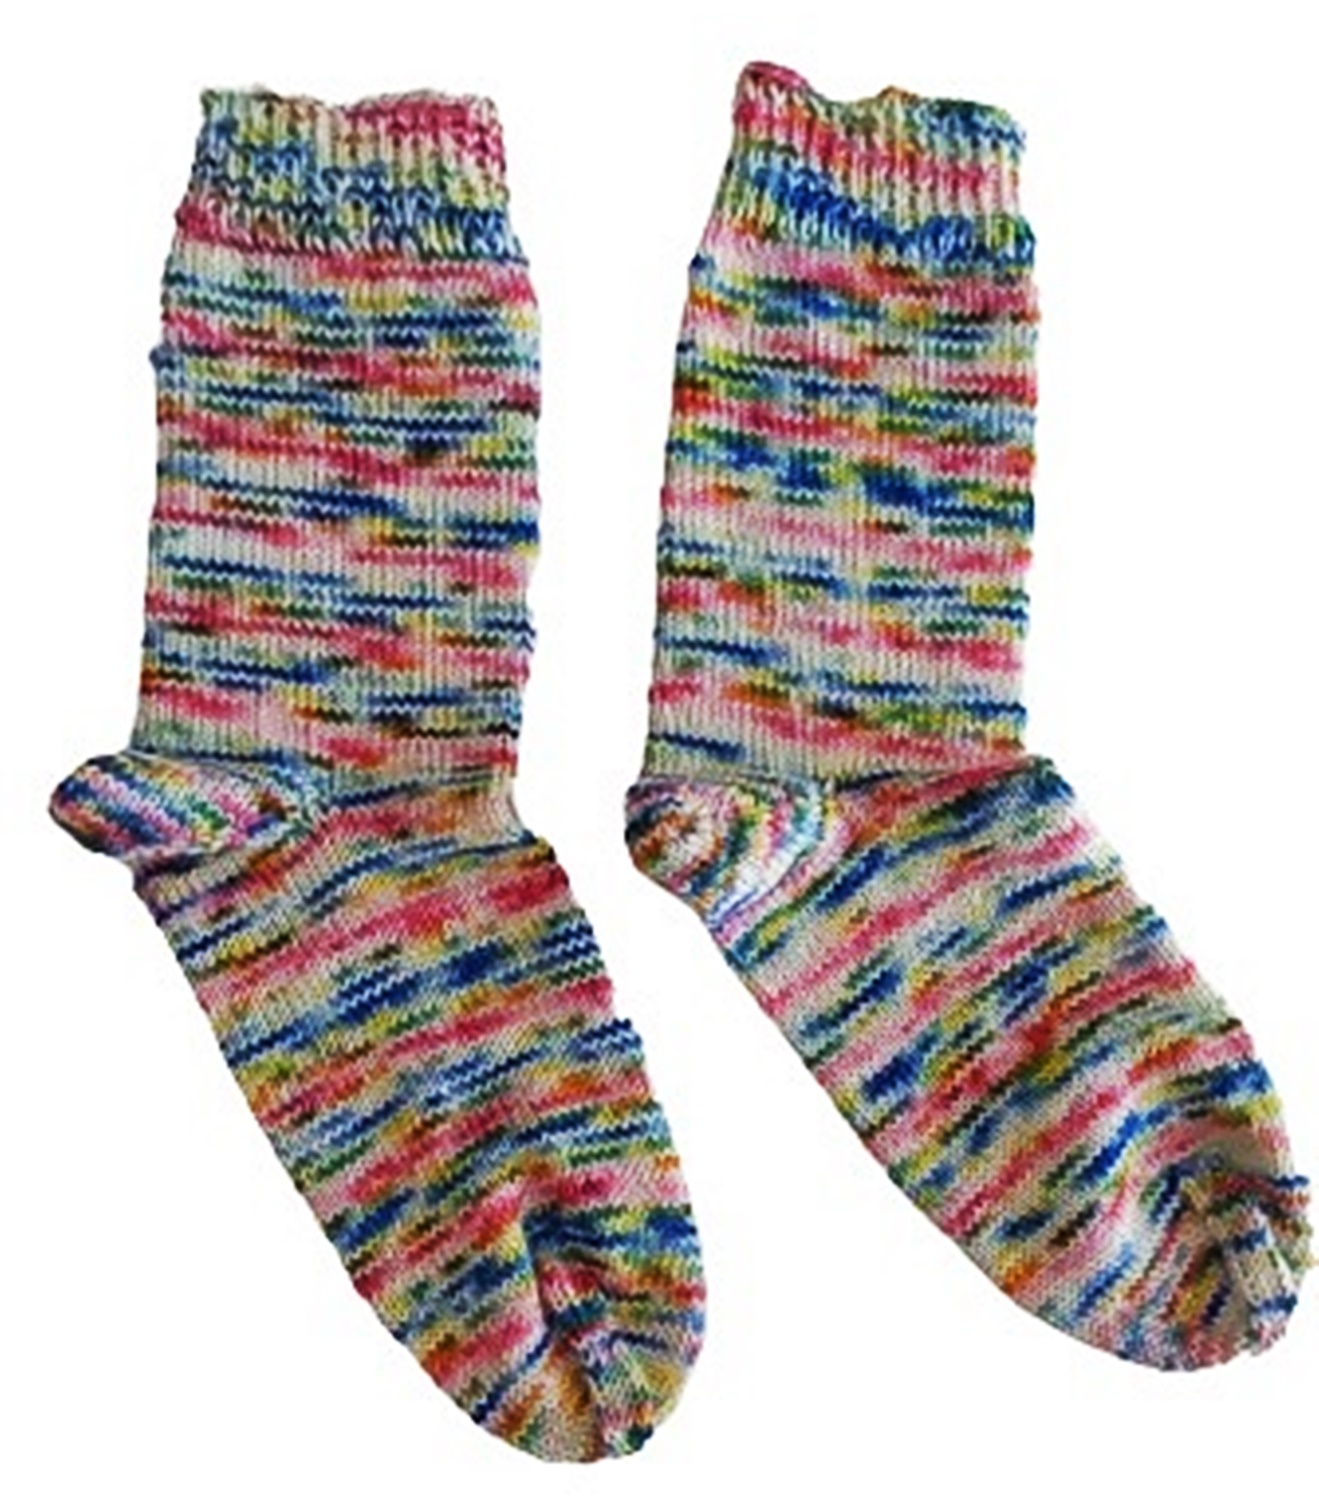 Socken 38/39 handgestrickt aus handgefärbter kuschelweicher Sockenwolle